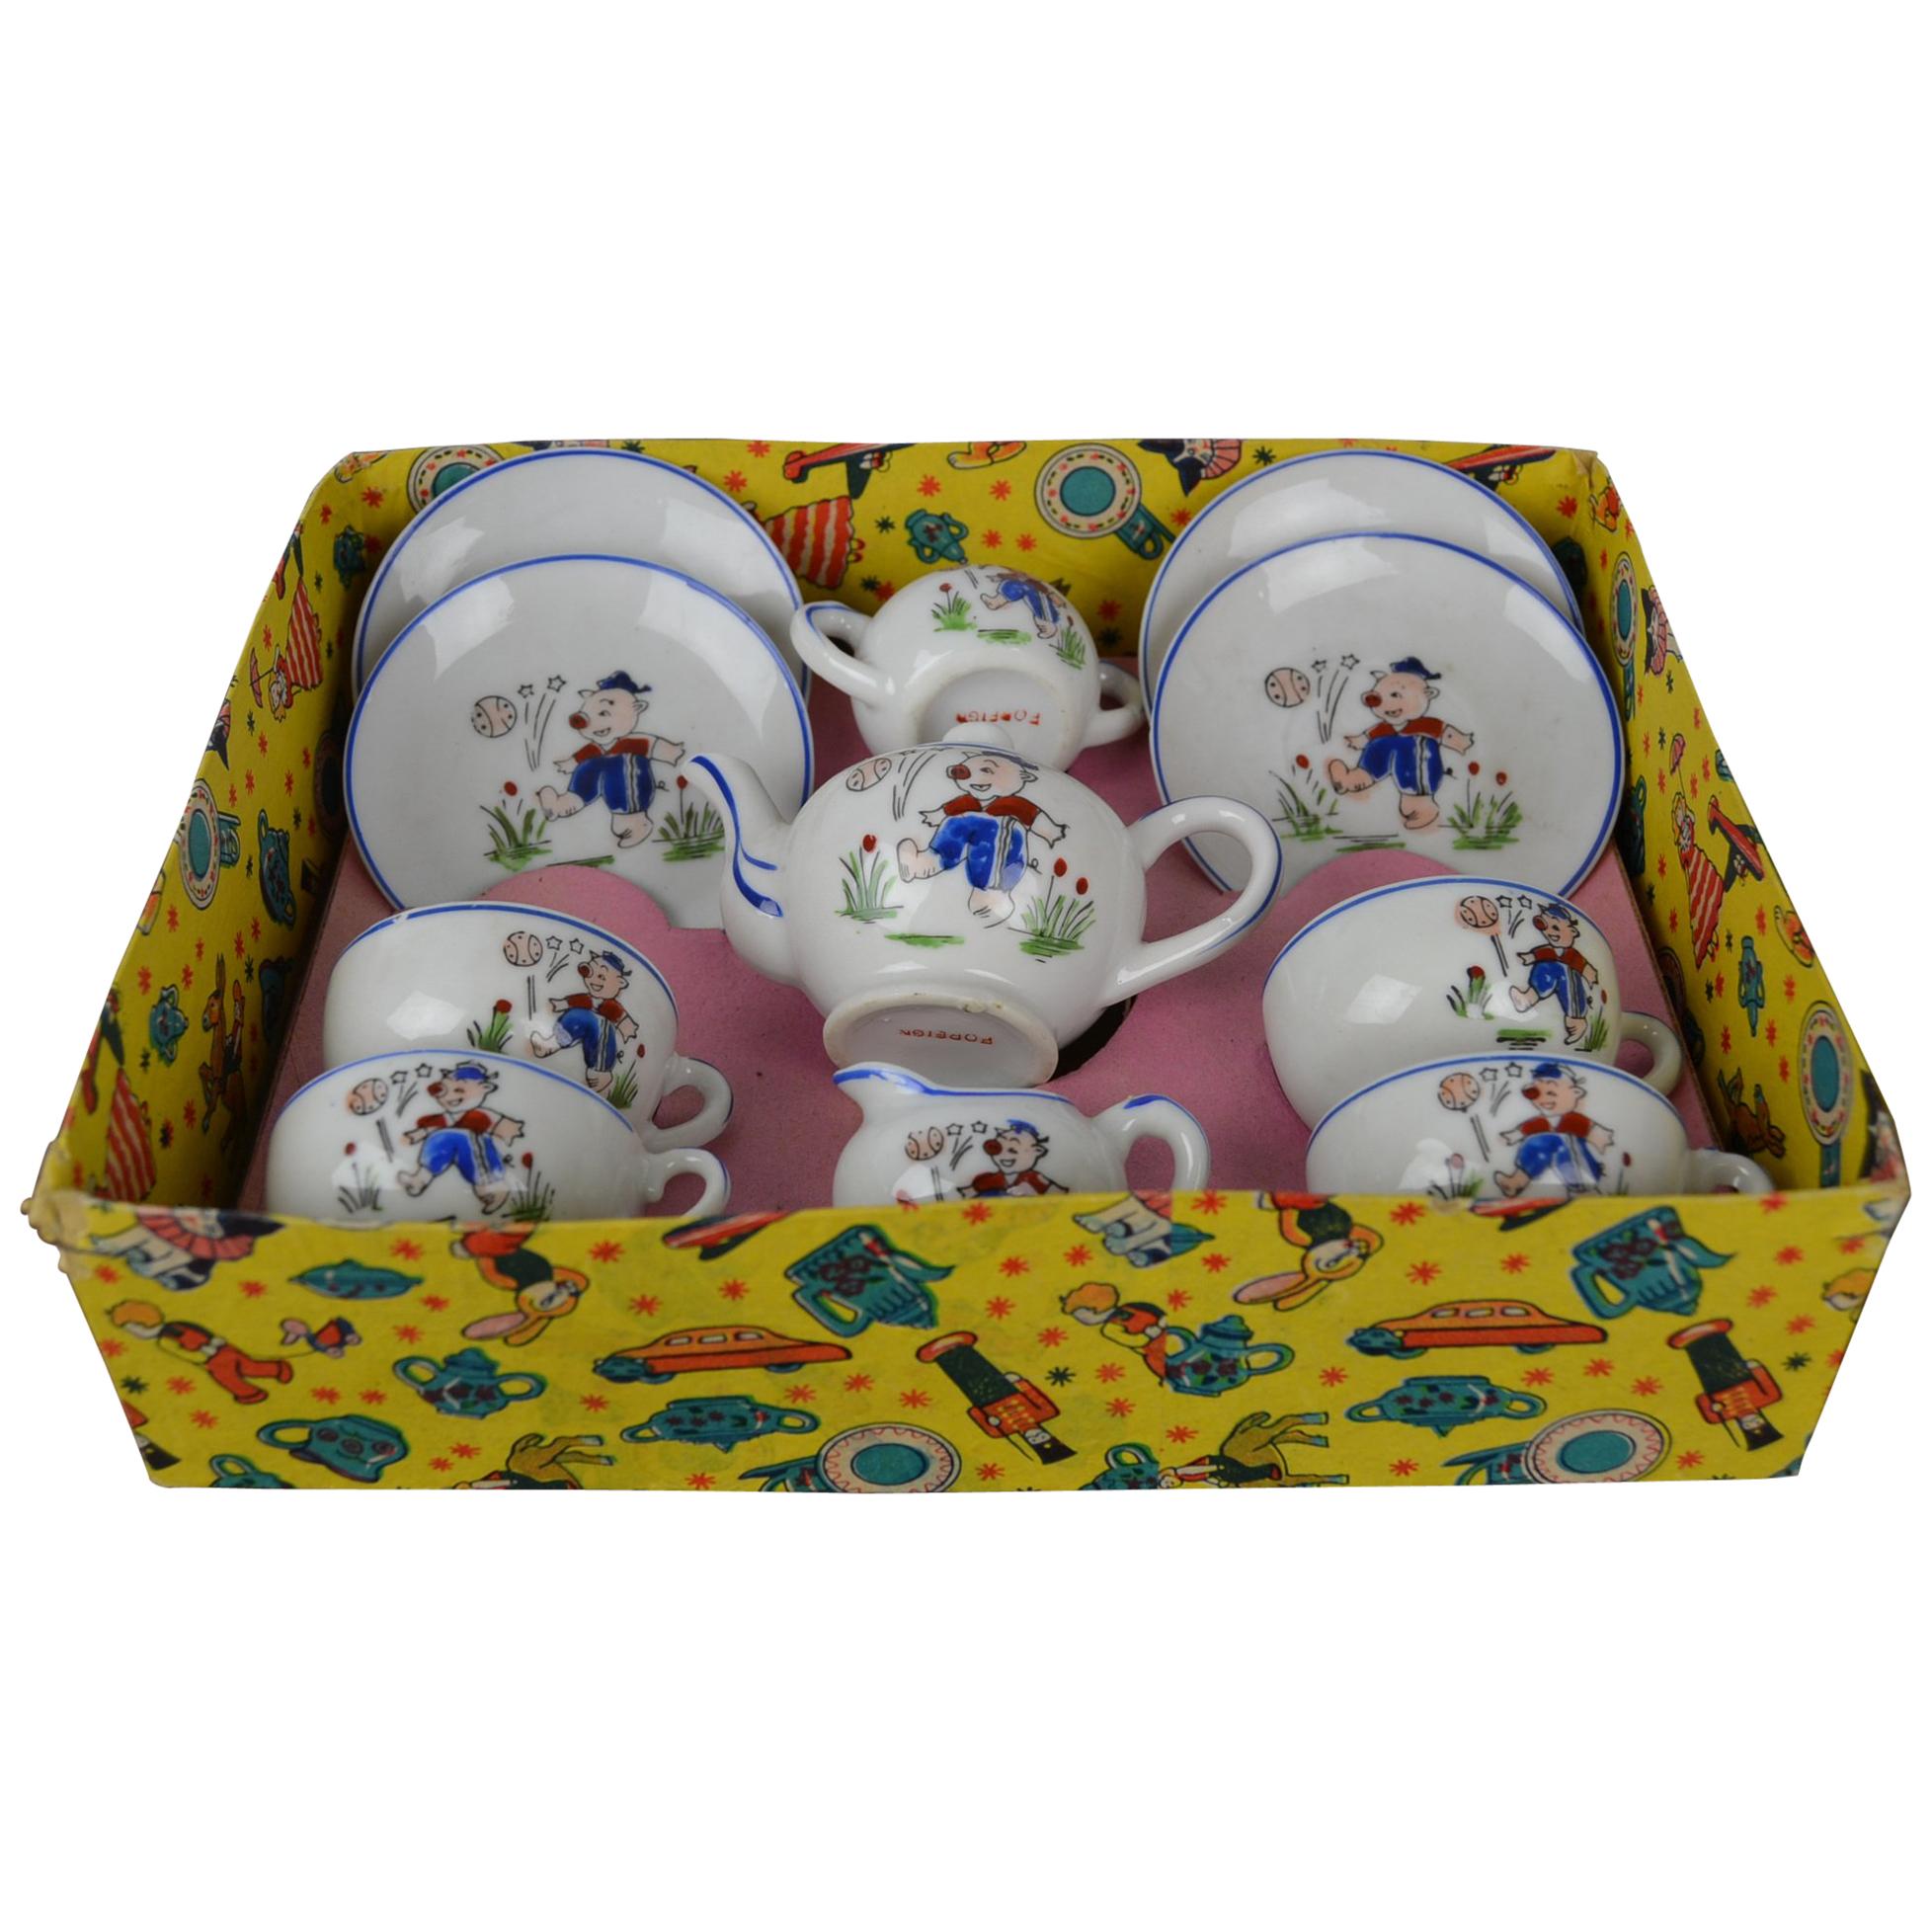 Porcelain Tea Set for Children, Pig Toy Tea Set, Foreign, Made in Japan